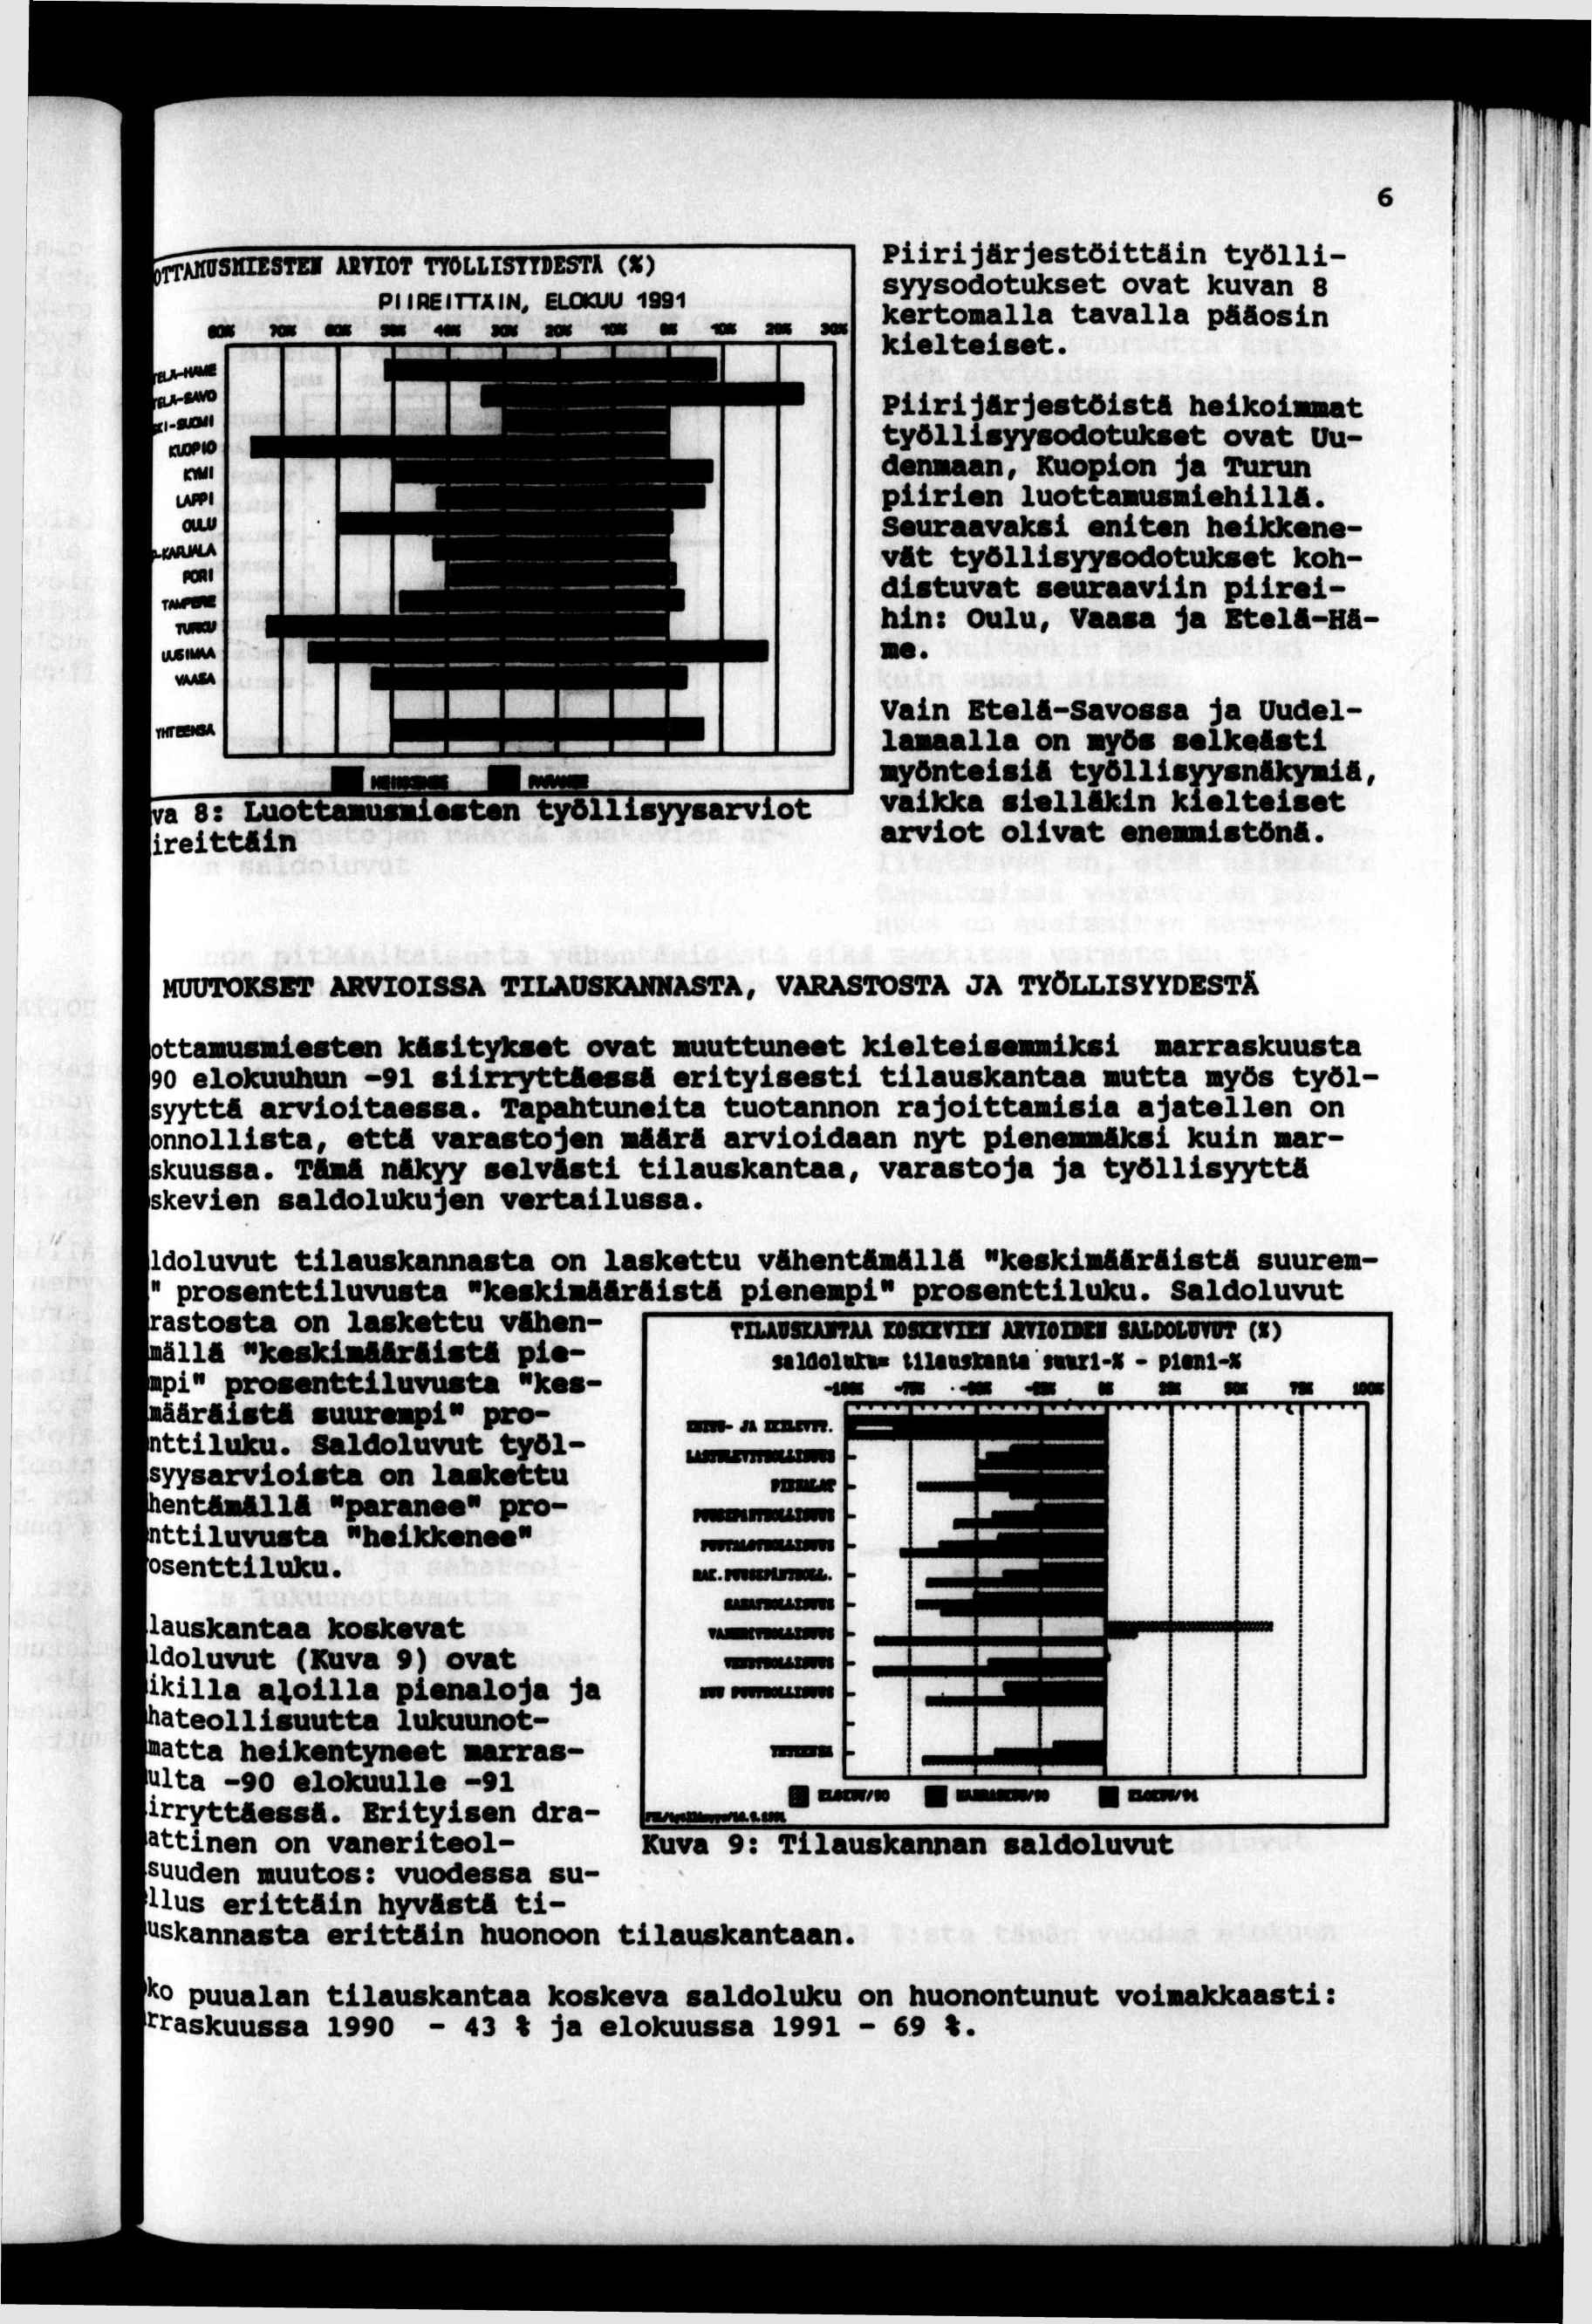 ^f^stasra aktot tdlsttoestj (X) PRETTÄN, ELOKUU 1991 Prjärjestö!ttÄn työllsyysodotukset ovat kuvan 8 kertomalla tavalla pääosn kelteset.